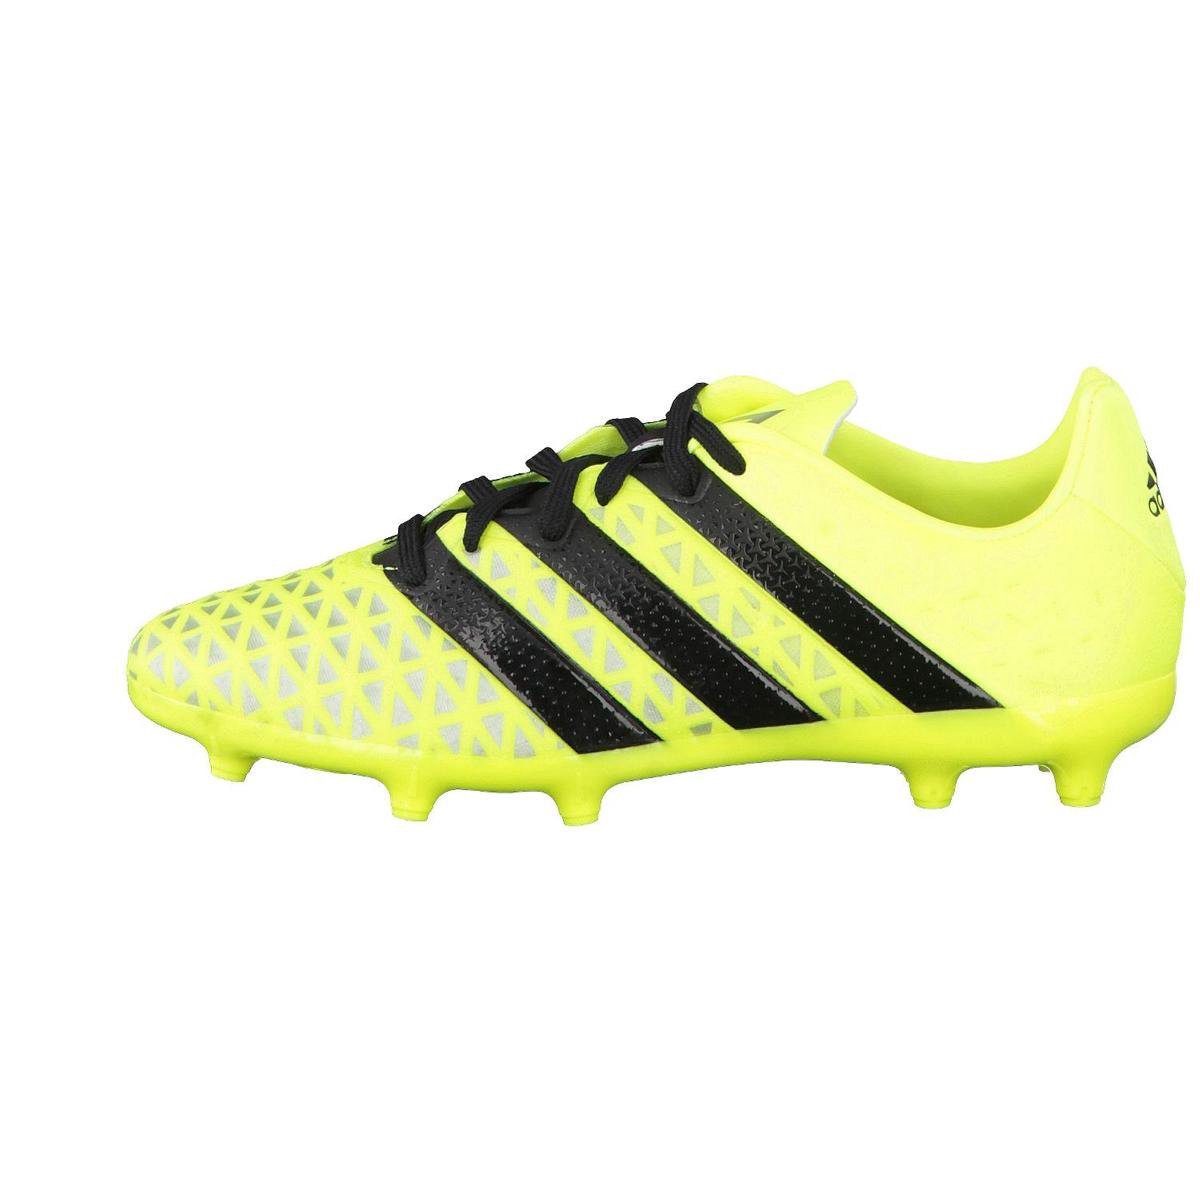 Adidas Ace 16.1 FG - Voetbalschoenen - Kinderen - Maat 38 2/3 - Geel/Zwart  | bol.com